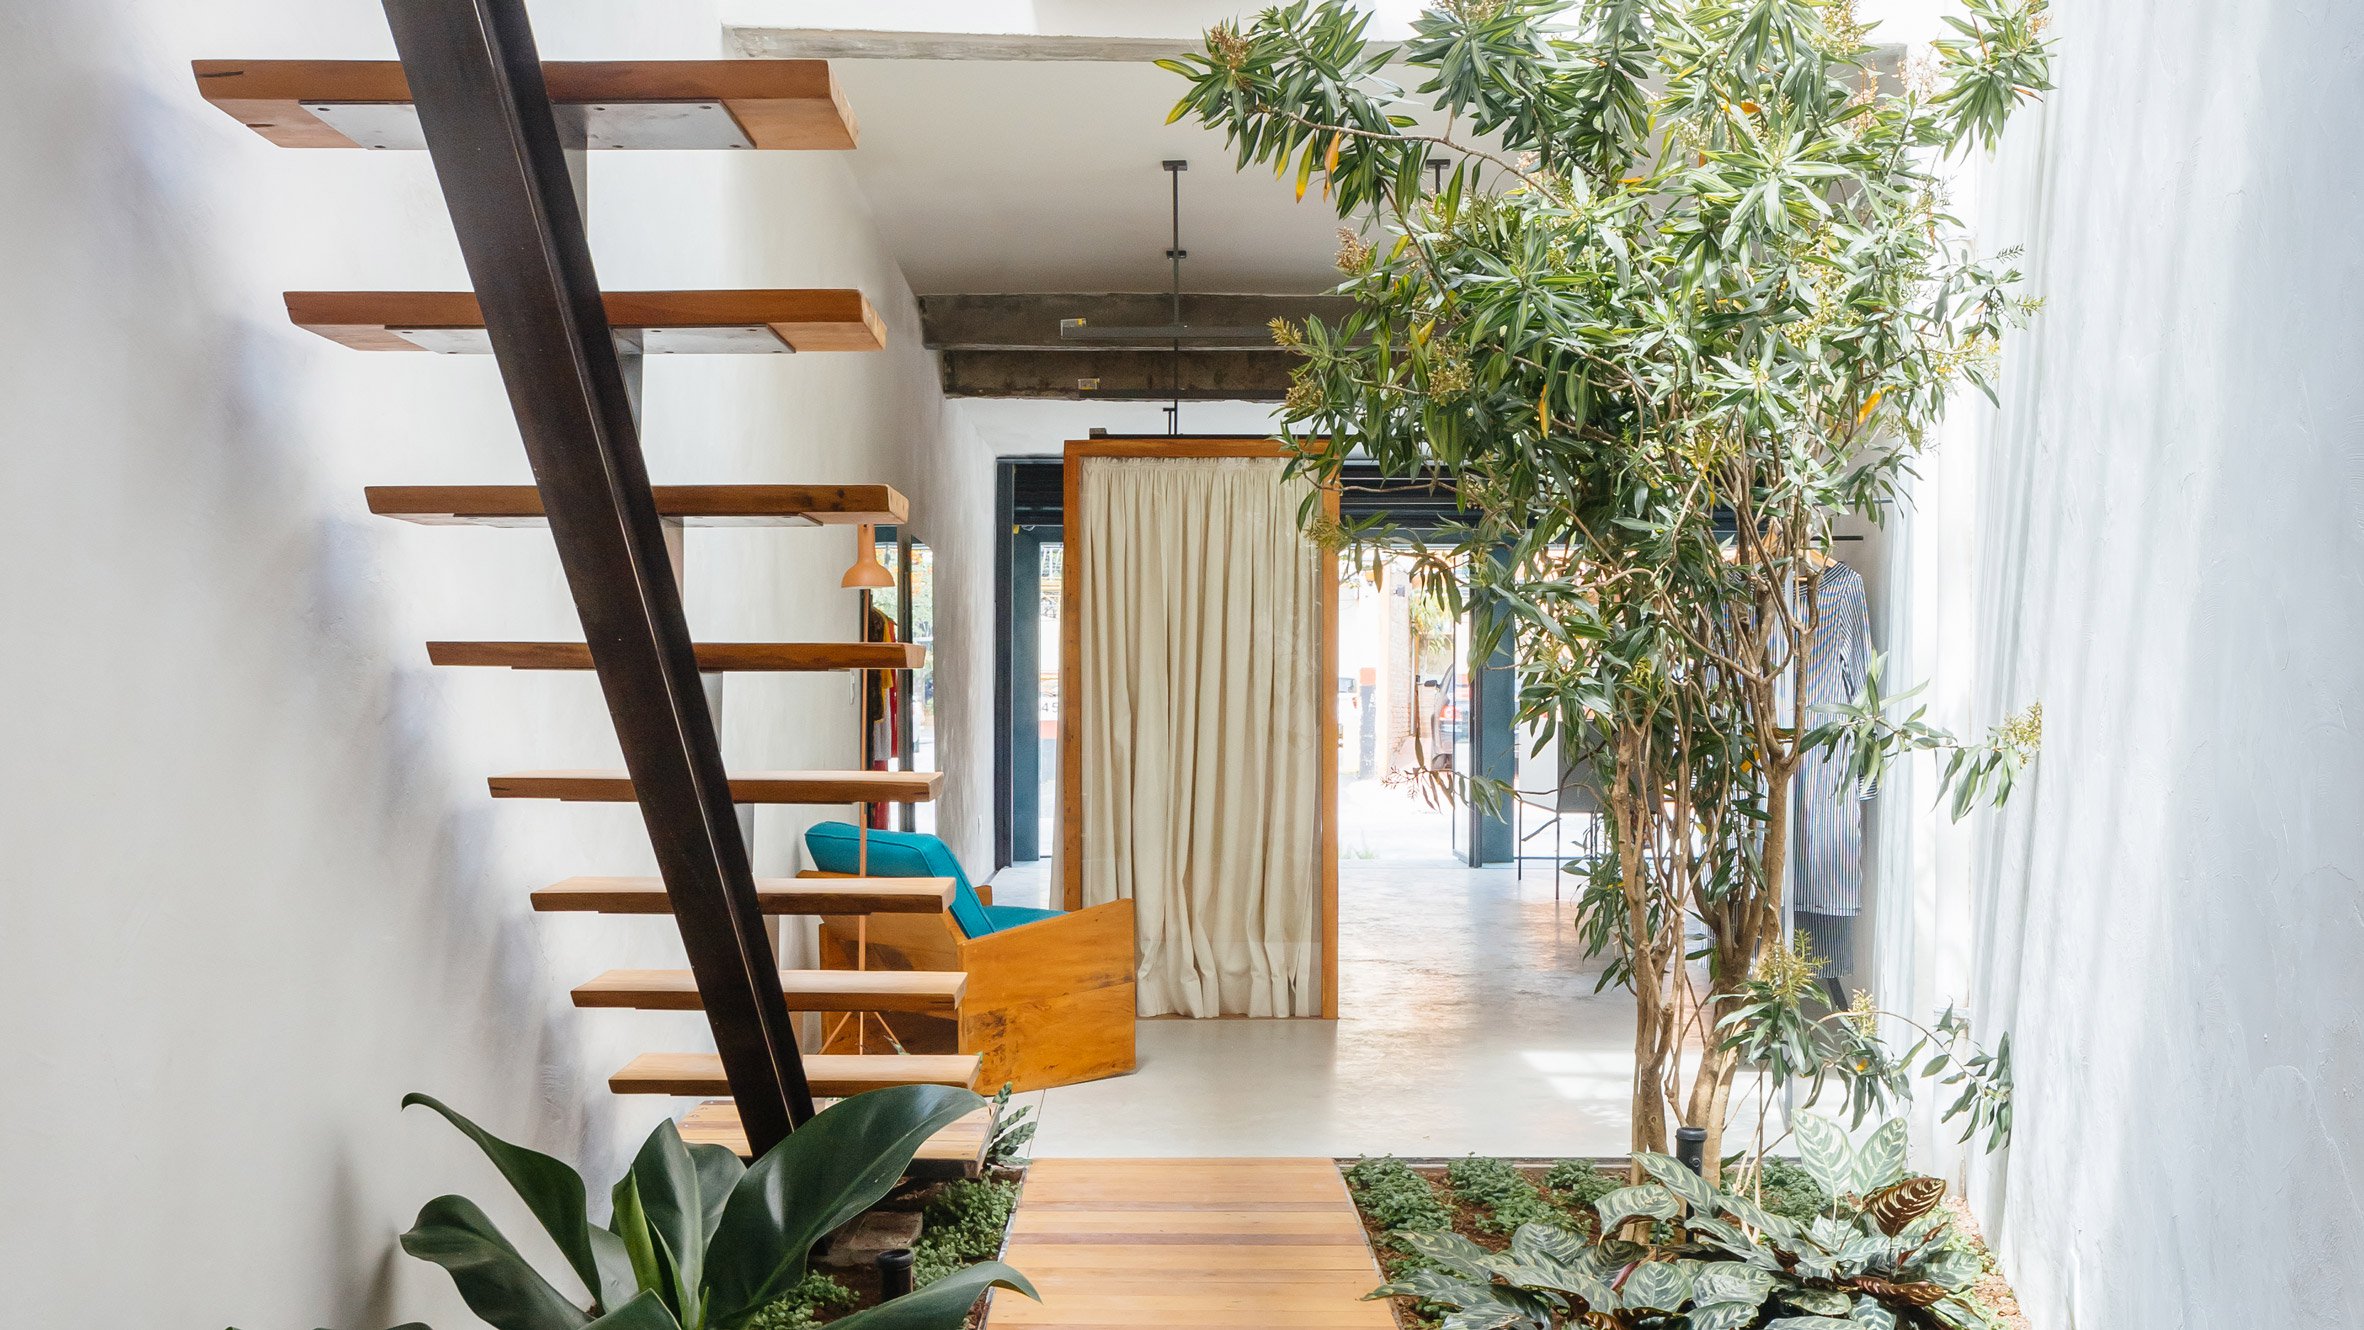 Vão Arquitetura designed a boutique around a luxuriant indoor garden